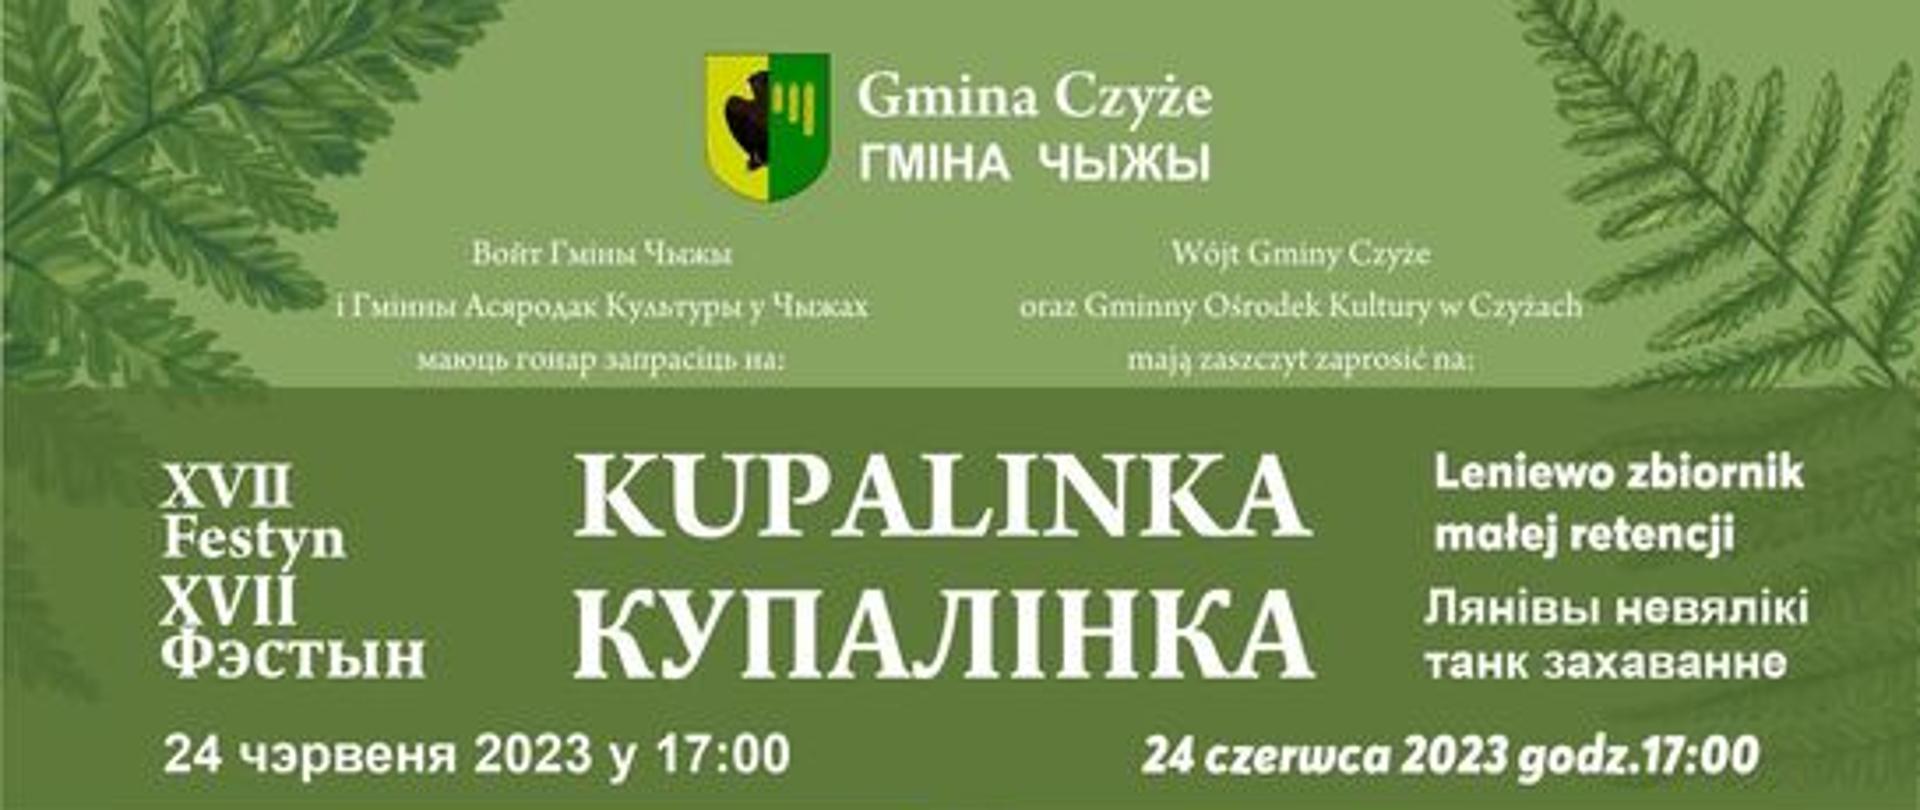 Plakat informacyjnym- na zielonym tle informacje organizacyjne w języku polskim i białoruskim (informacje zawarte w artykule)